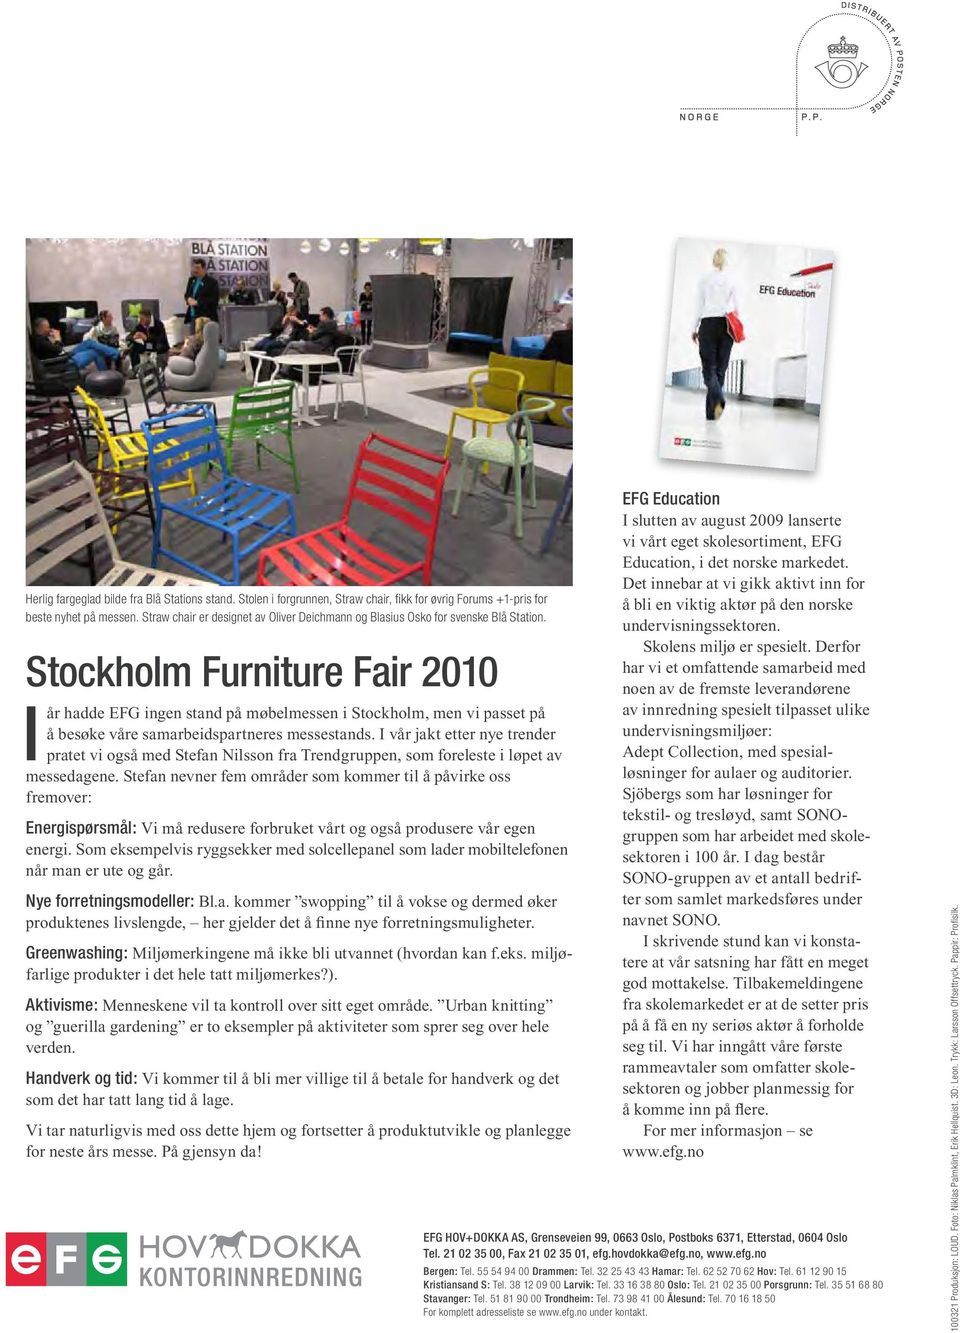 Stockholm Furniture Fair 2010 I år hadde EFG ingen stand på møbelmessen i Stockholm, men vi passet på å besøke våre samarbeidspartneres messestands.